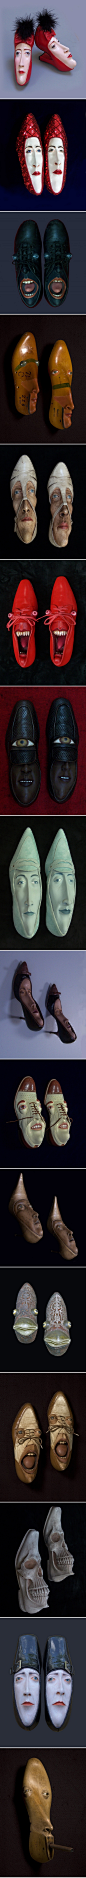 雕塑家Gwen Murphy带来的鞋子脸怪异的艺术作品。这些有着奇形怪状的鞋子，是艺术家Gwen Murphy带来的有着各种面孔的鞋子。它们有着长长的脸，好奇的眼睛，撅起的大嘴巴，与鞋子组合成一张独特的面孔，相当令人惊讶。

Gwen Murphy在还是一个小女孩的时候，就酷爱观察鞋子。鞋子的样式千百种，穿在不同人的脚上，表现出的个性气质更是千差万别。鞋子只有一张嘴，伸进去的终究还是臭脚丫子。Gwen Murphy却将这一双双淘汰的鞋子，制作成独特的形态各异的脸谱，刹那间，鞋子也拥有了生动的表情与个性。